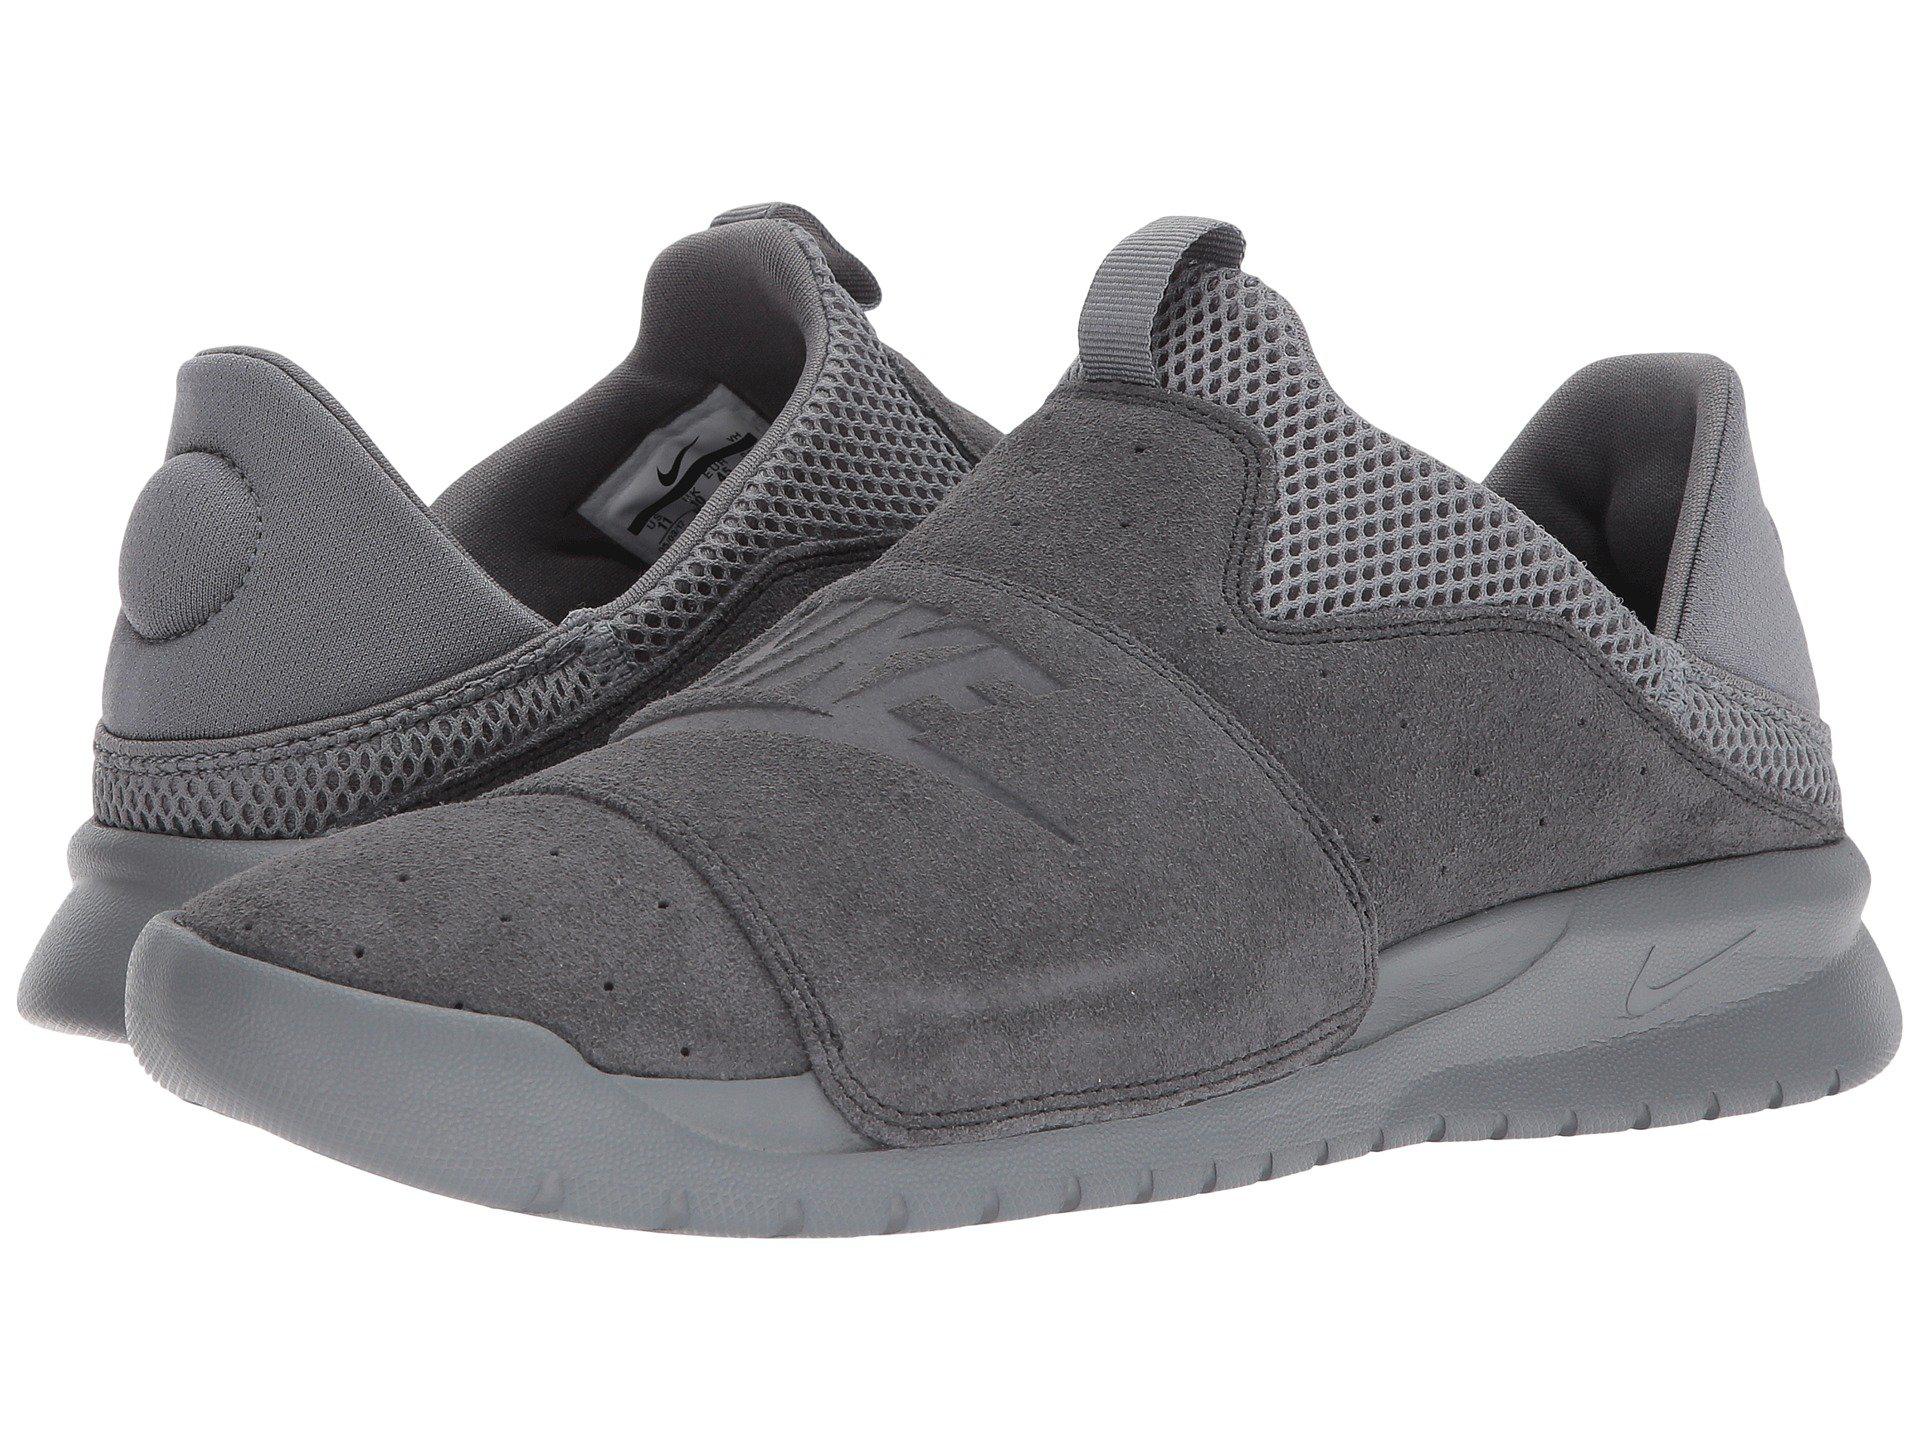 Lyst - Nike Benassi Slip-on in Gray for Men